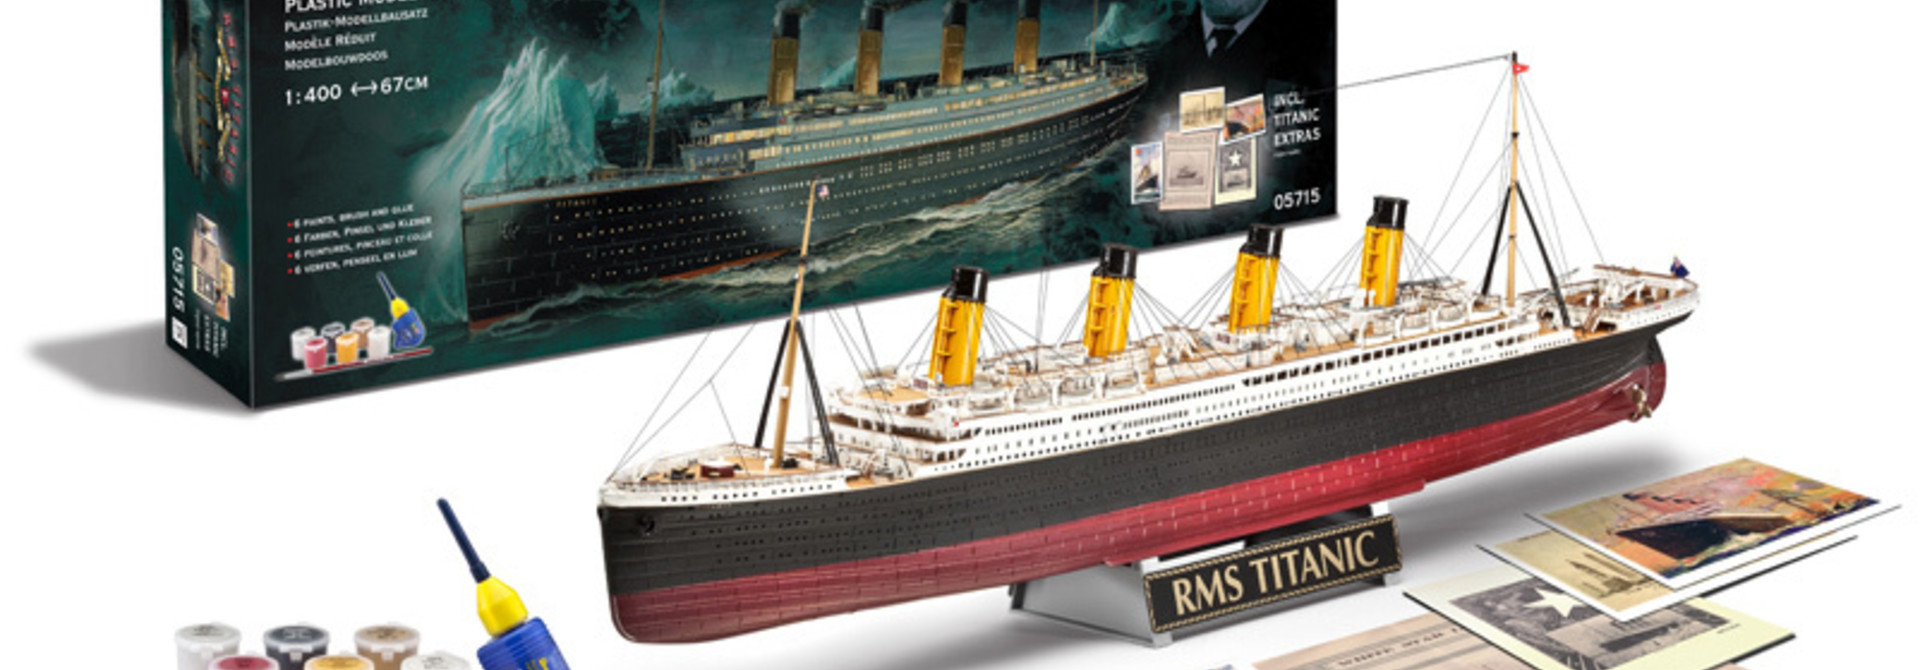 1:400 Geschenkset "100 Jahre Titanic"